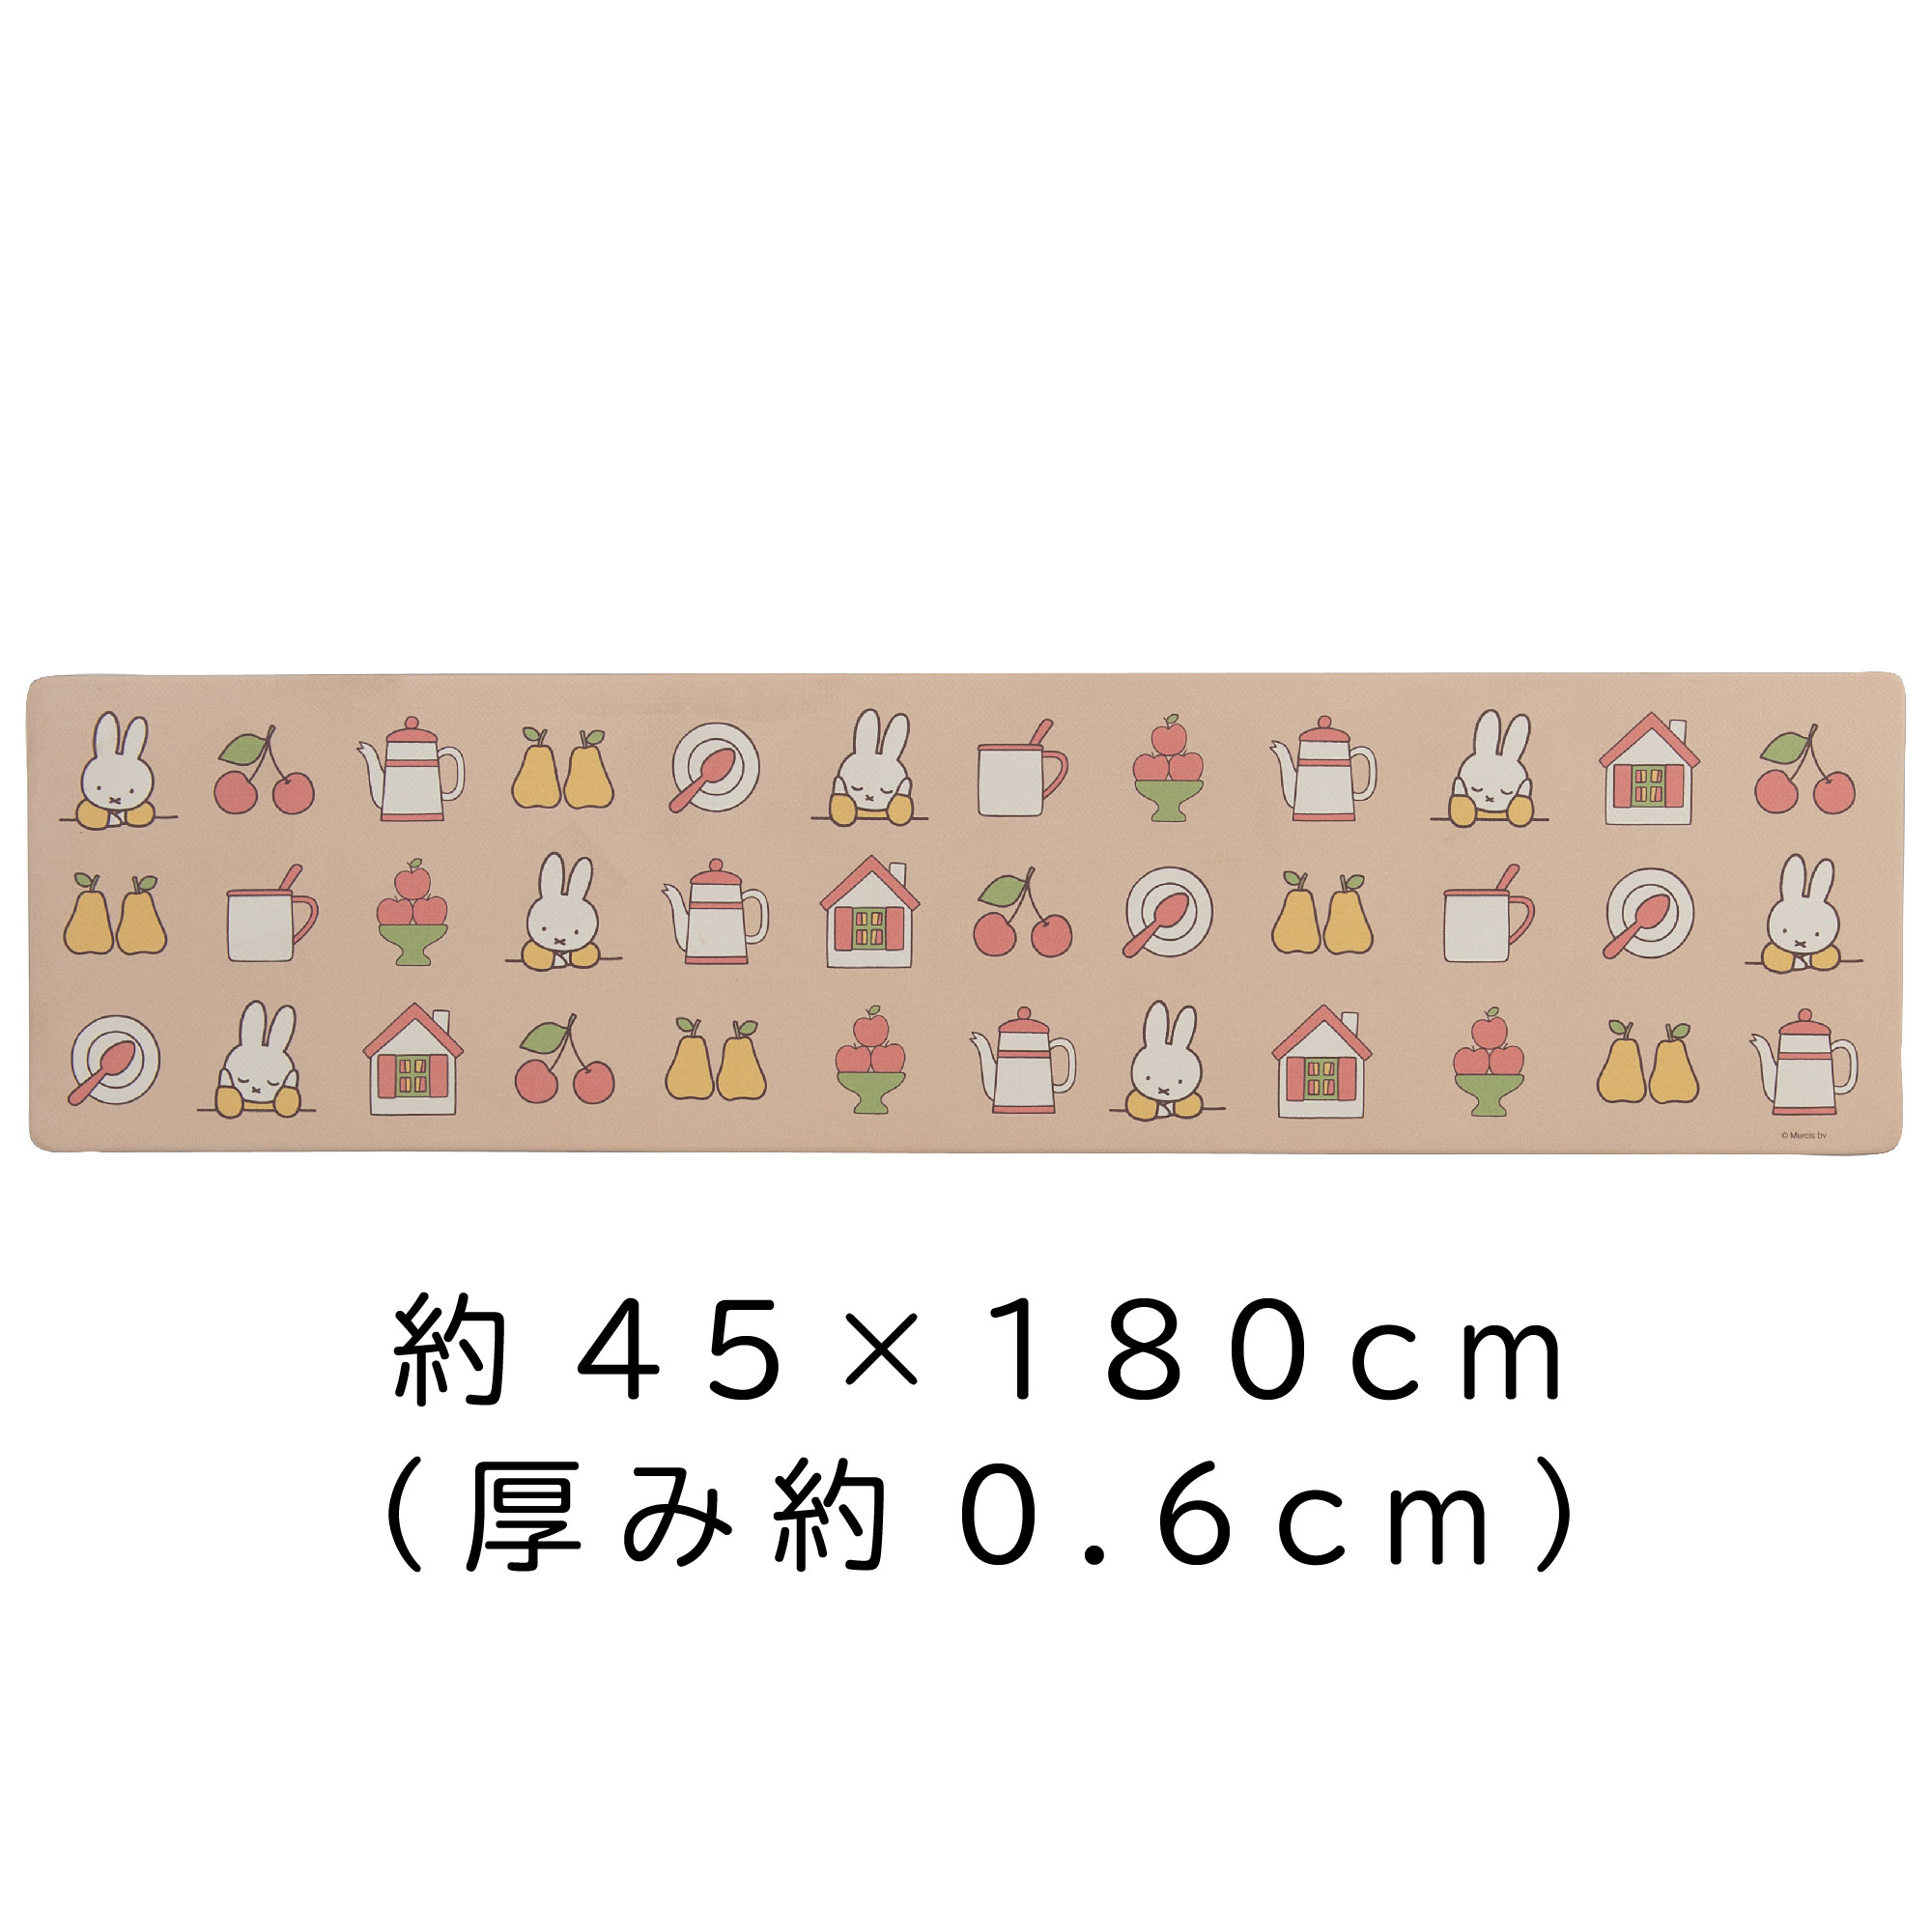 即納】【雑貨】ミッフィー『アイコン』 PVCマット/キッチン センコー